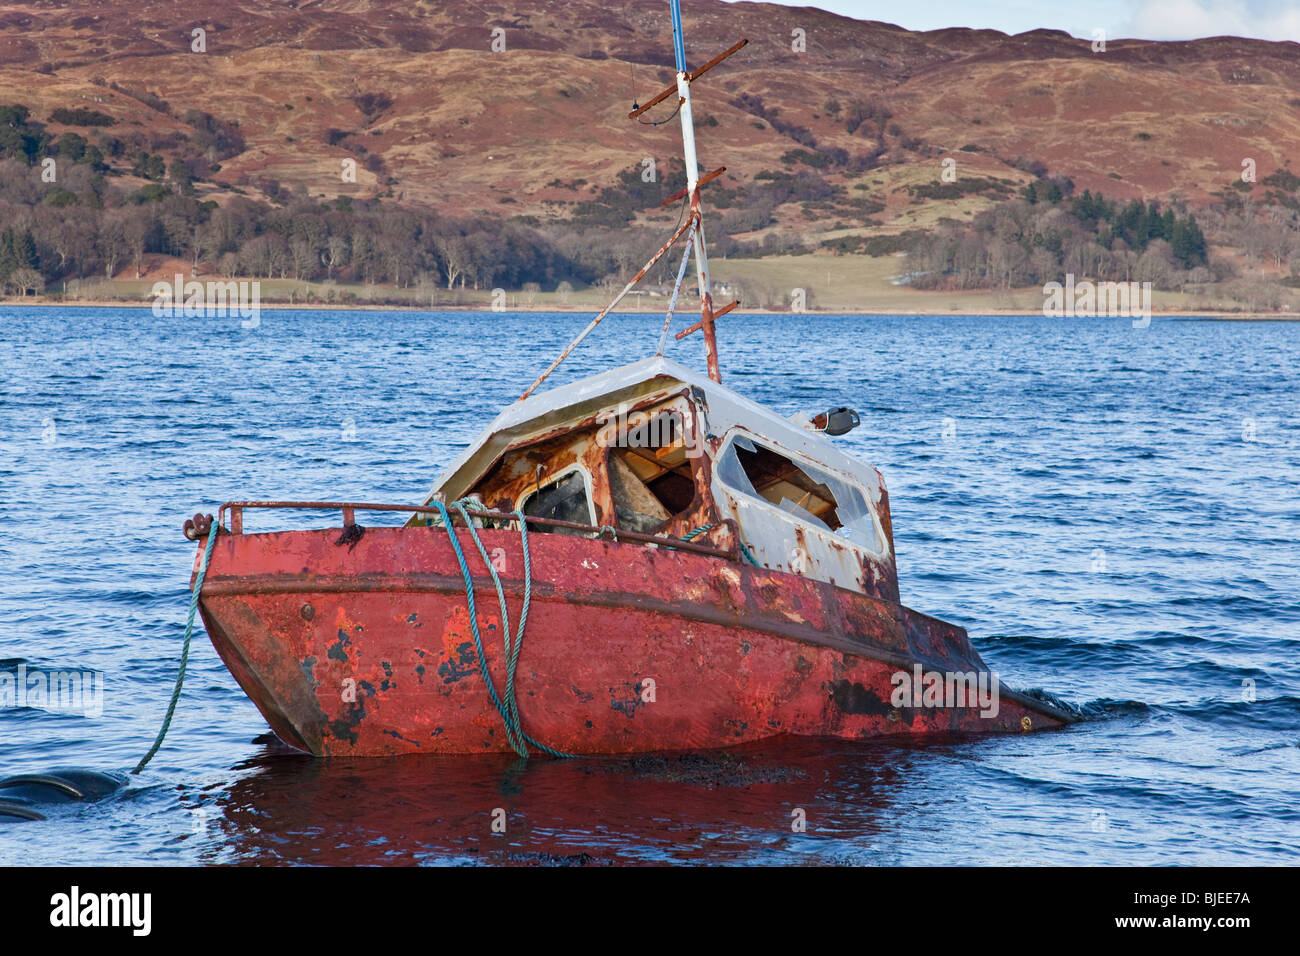 half-sunken-wreck-of-fishing-boat-on-loch-etive-BJEE7A.jpg